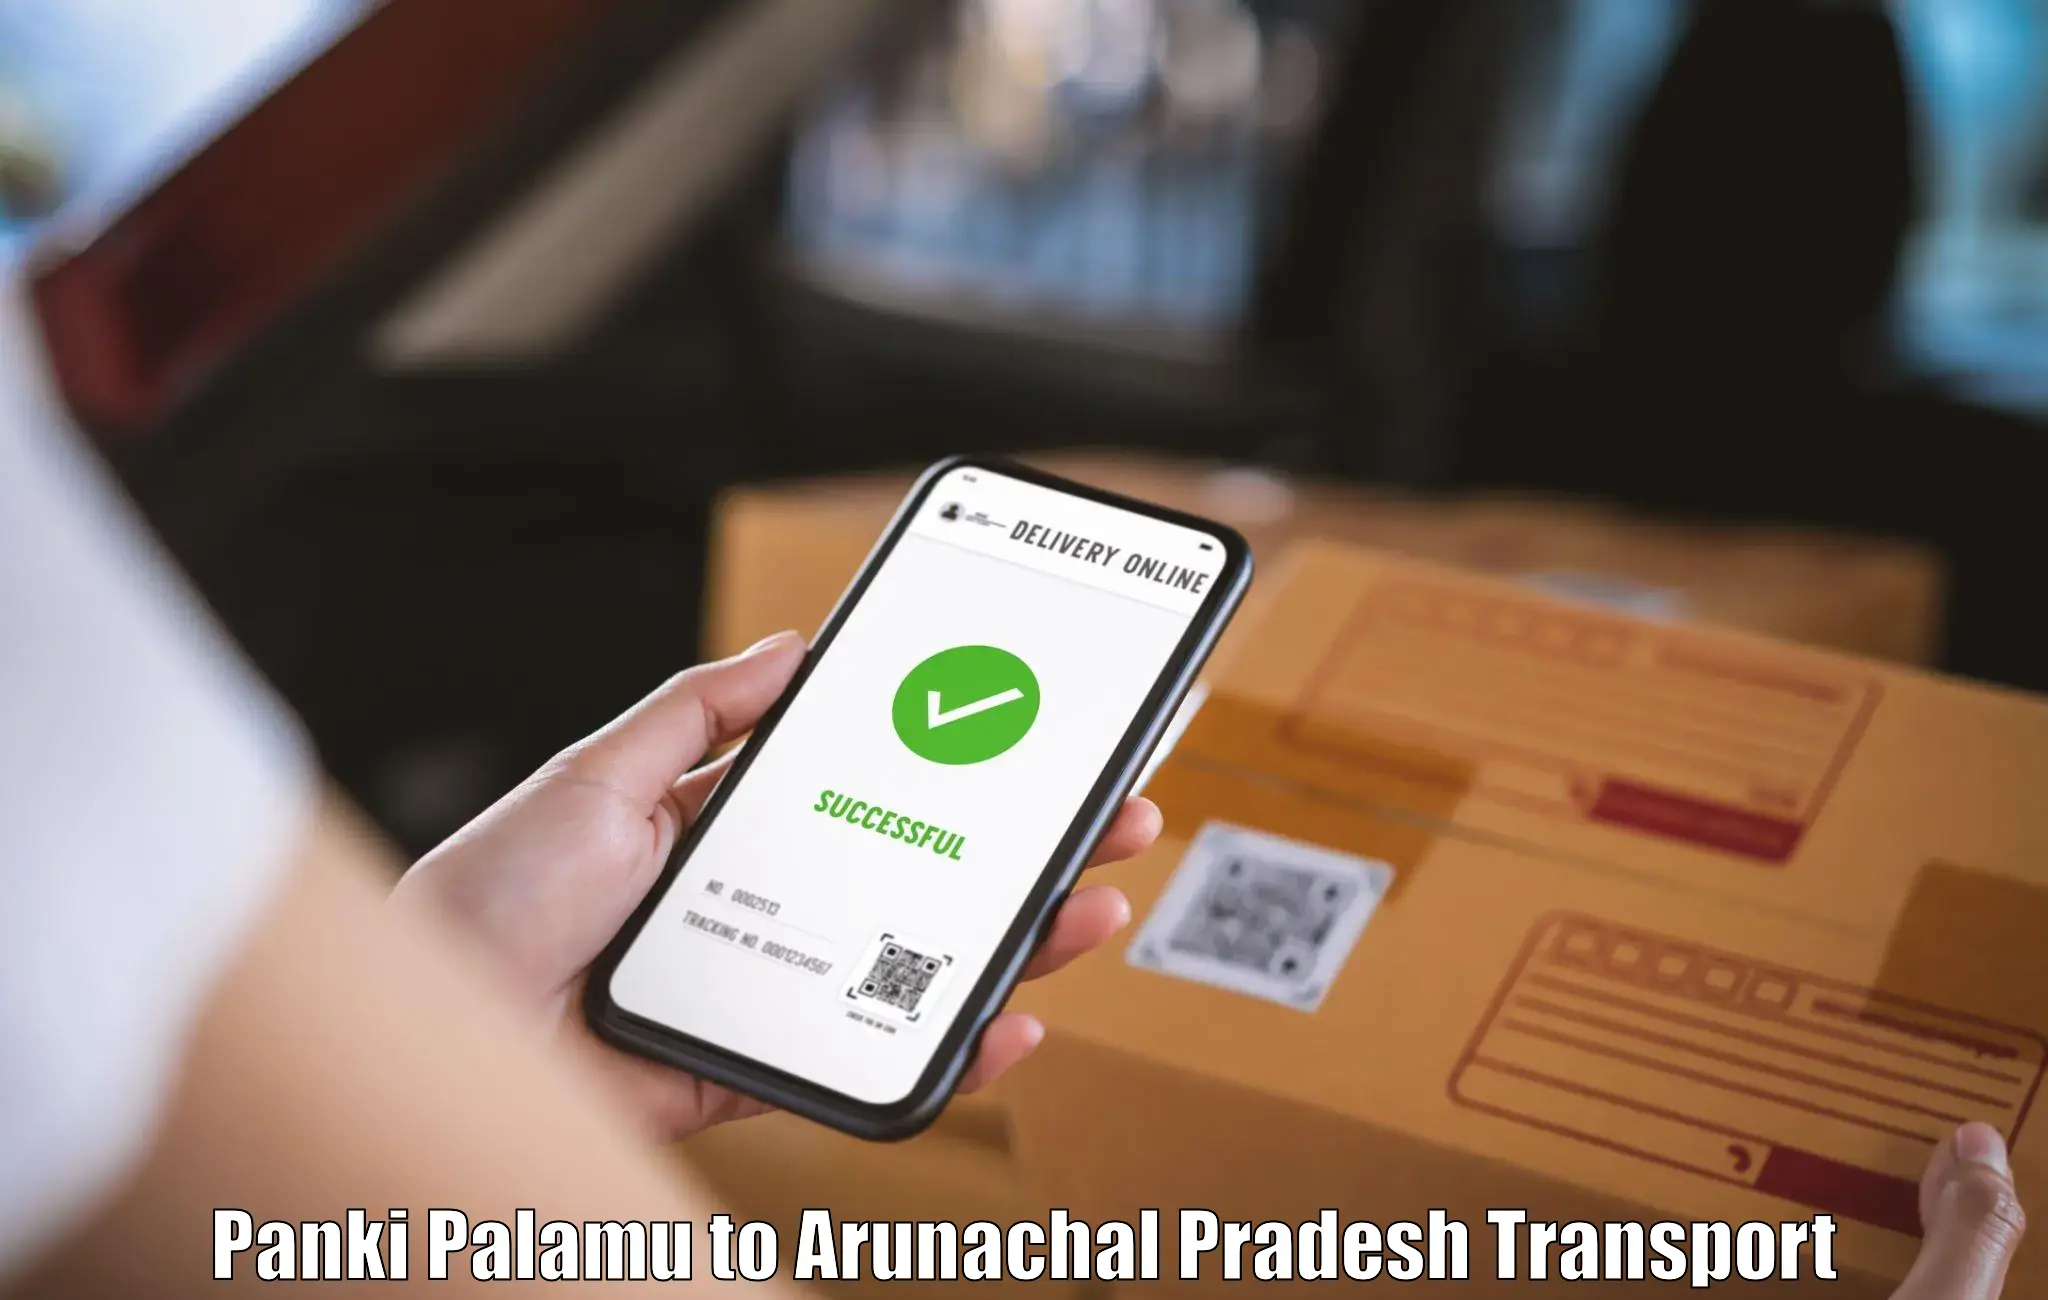 Goods delivery service Panki Palamu to Arunachal Pradesh